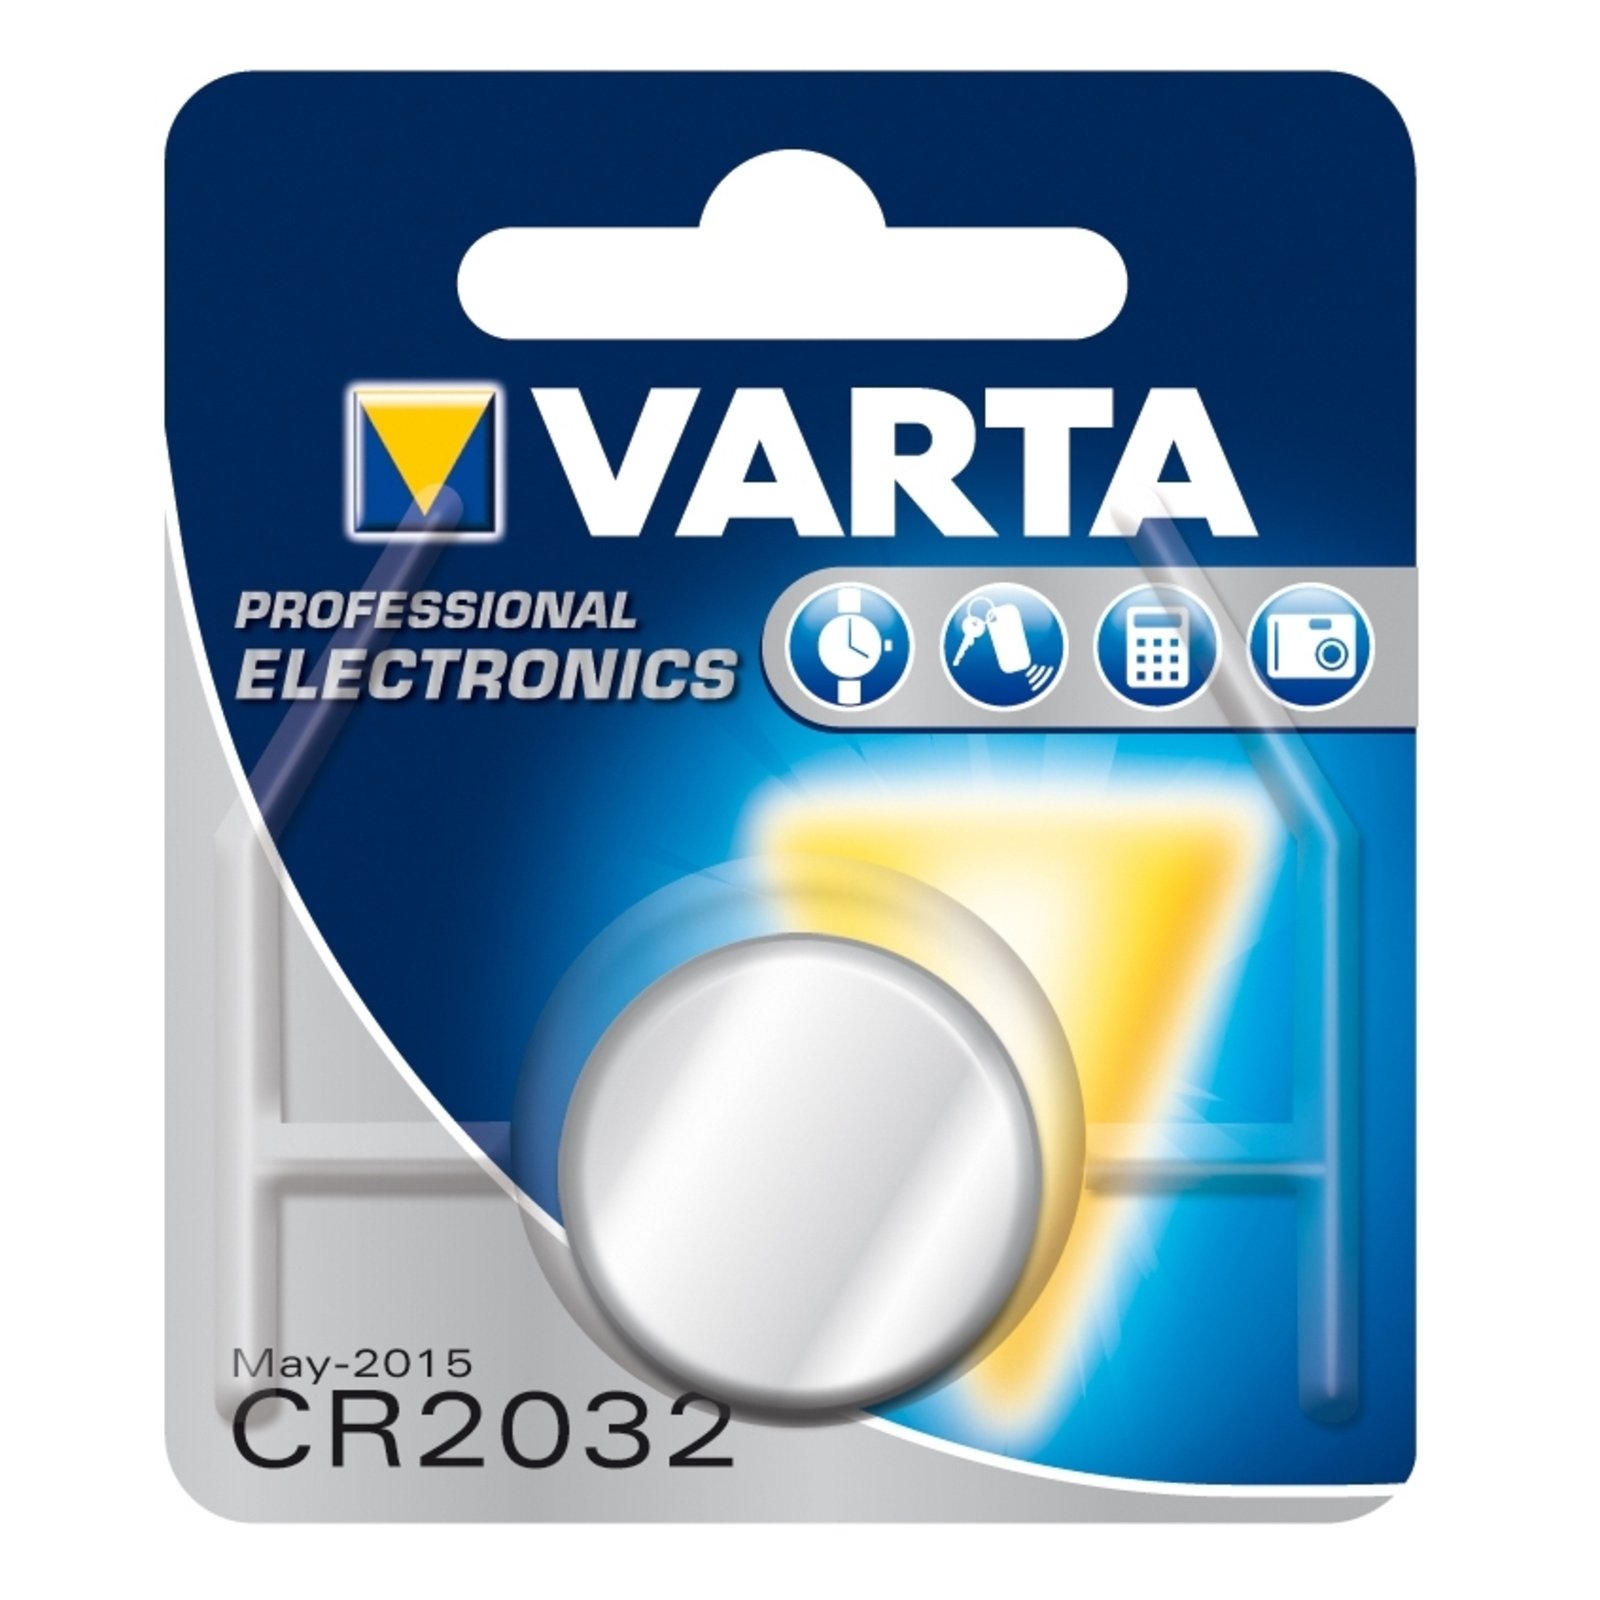 VARTA Lithium button cell CR2032 3 V 220 mAh